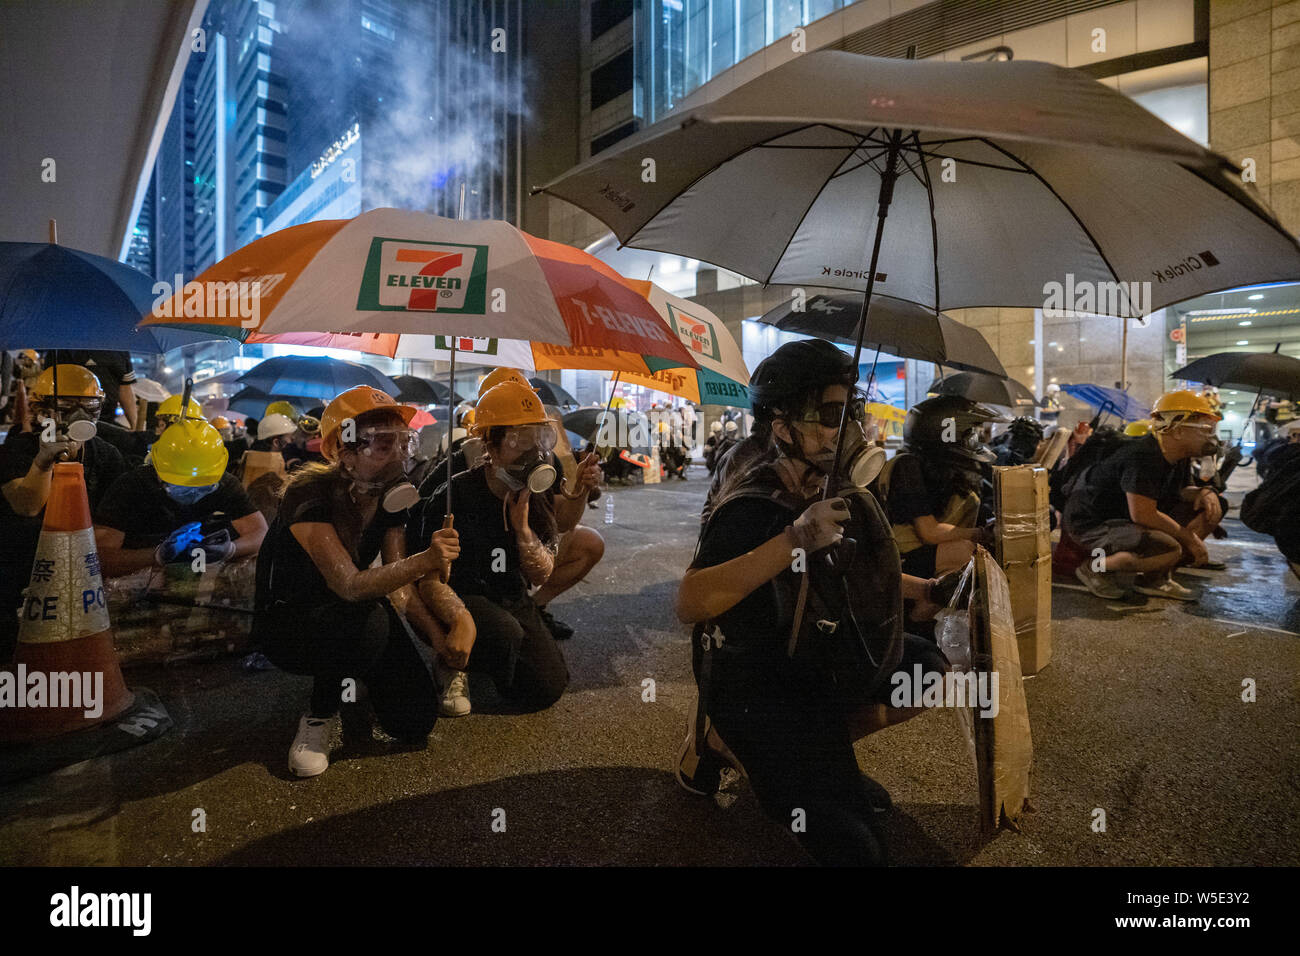 Los manifestantes utilizan paraguas y sus escudos para protegerse de escombros policía disparando balas contra ellos.Decenas de miles de manifestantes marcharon en pro de la democracia en Hong Kong central en otra ronda de demostración contra el gobierno. La policía antidisturbios utilizó gases lacrimógenos y balas de escombros contra manifestantes, a pesar del hecho de que la policía ha sido ampliamente elogiado por el público por su uso desproporcionado de la fuerza contra los manifestantes en el pasado las manifestaciones desencadenadas por el polémico proyecto de ley de extradición presentada por el Gobierno de Hong Kong. Foto de stock